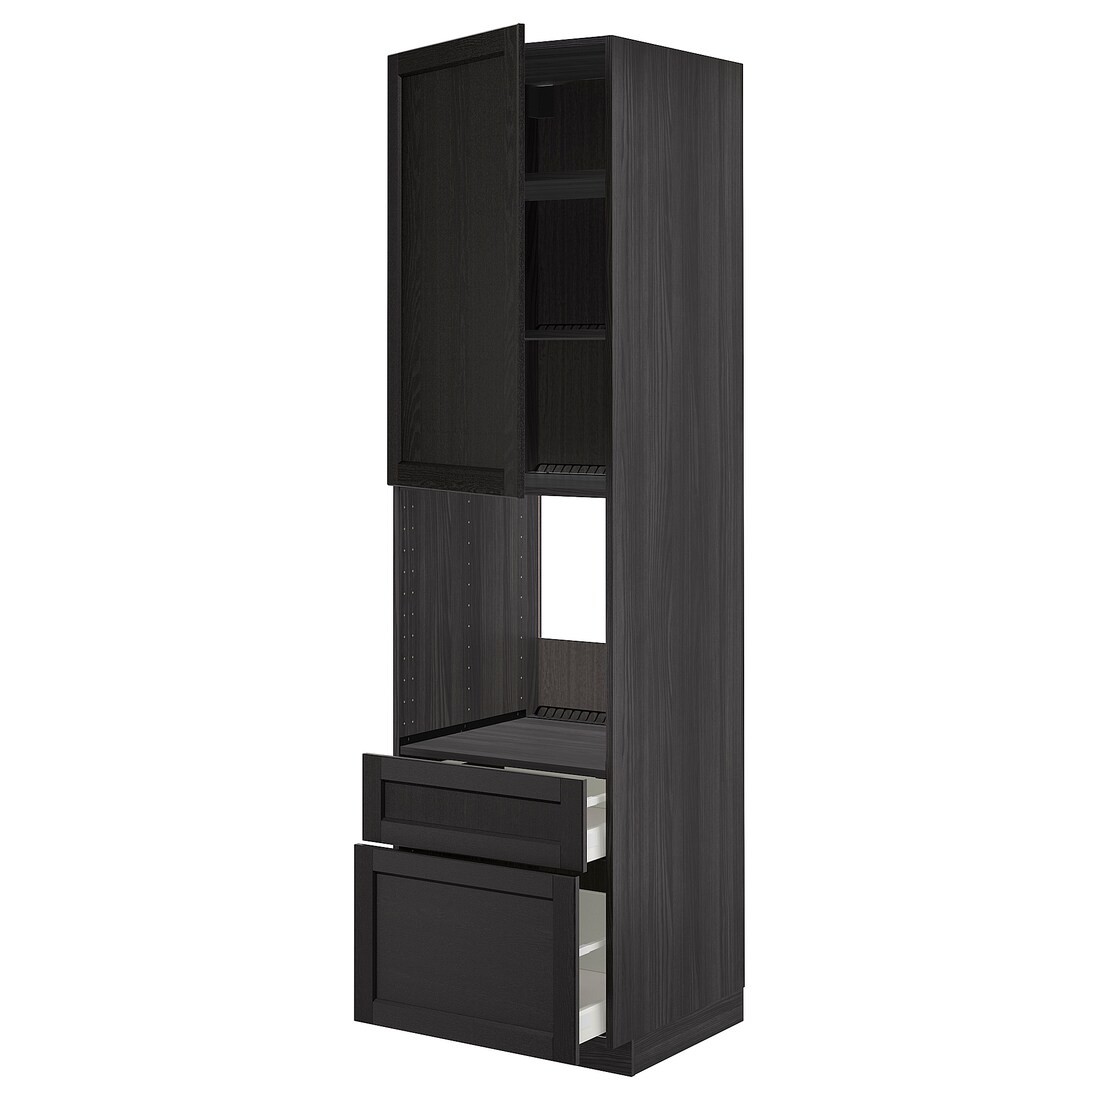 IKEA METOD МЕТОД / MAXIMERA МАКСИМЕРА Высокий шкаф для духовки с дверцей / ящиками, черный / Lerhyttan черная морилка, 60x60x220 см 39468209 | 394.682.09